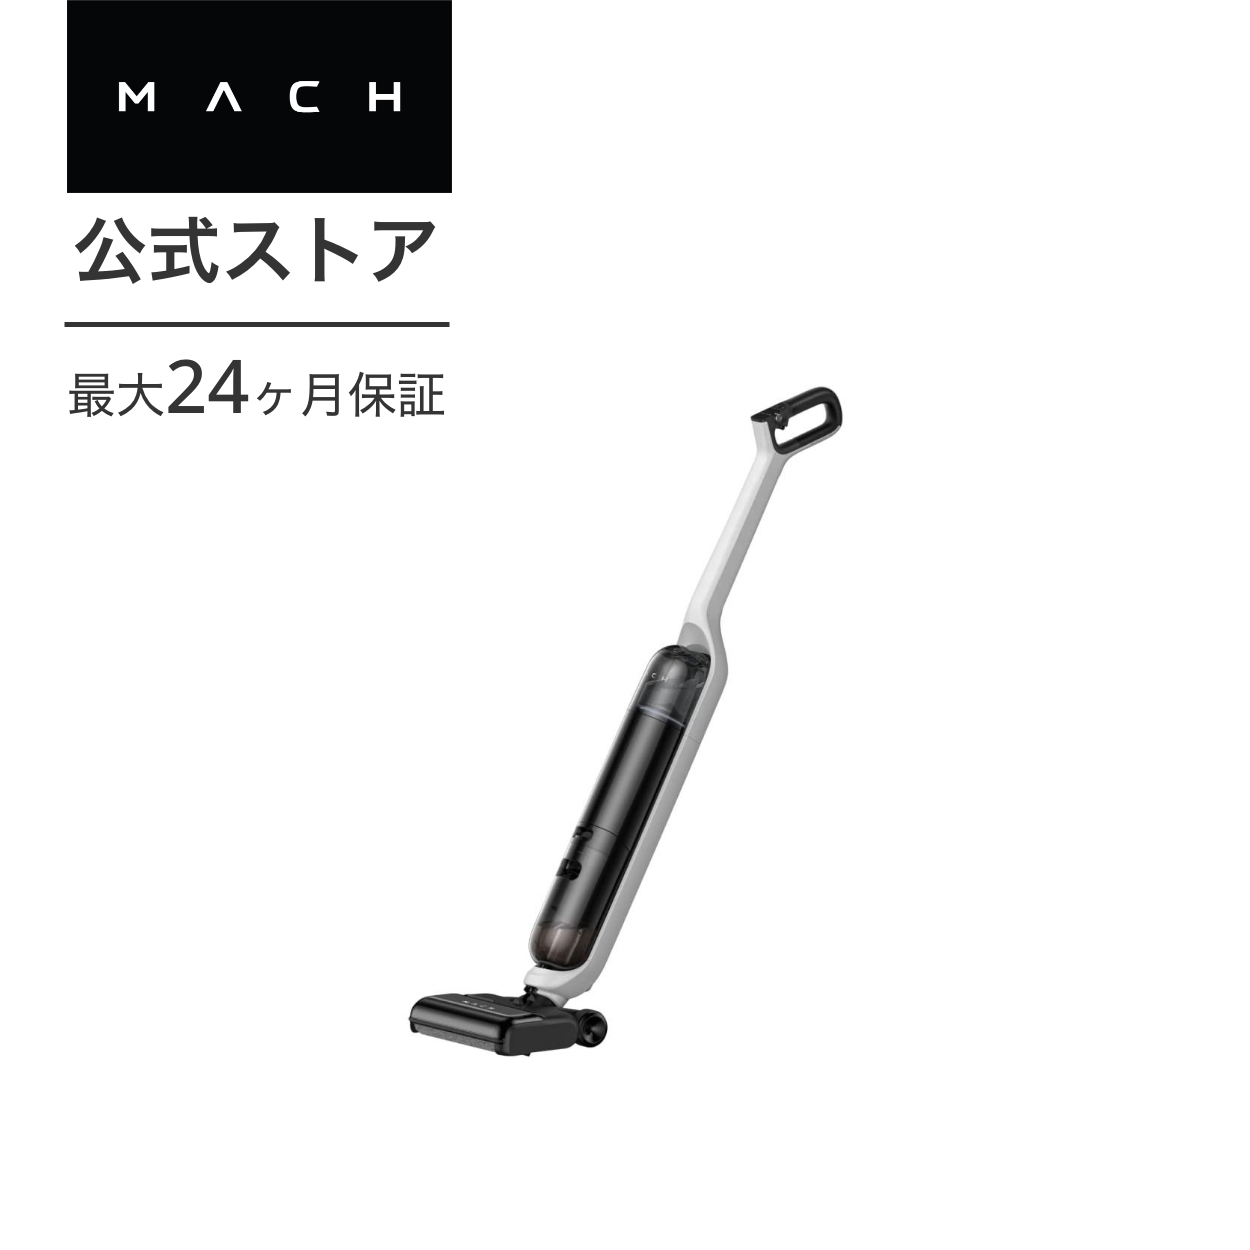 Anker MACH (マッハ) V1 (コードレス水拭き掃除機) 水拭き両用/強力 